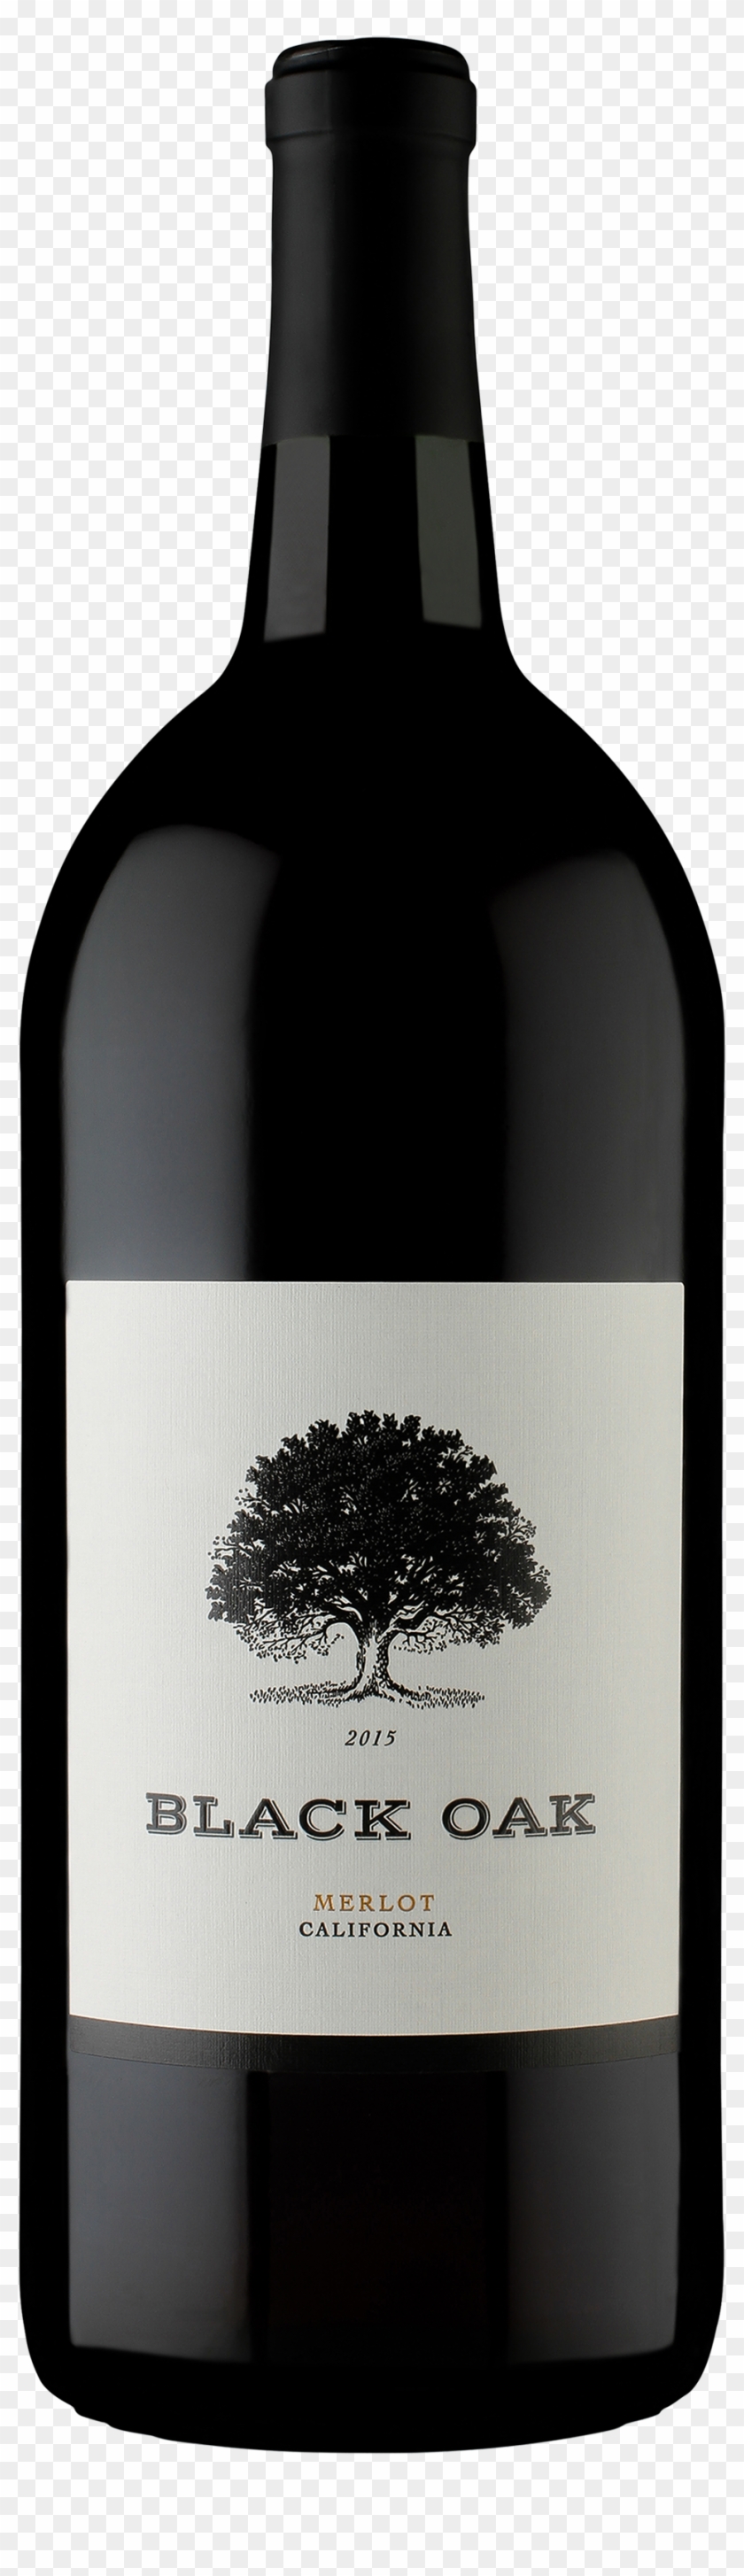 Black Oak Merlot - Black Oak Wine #1021970